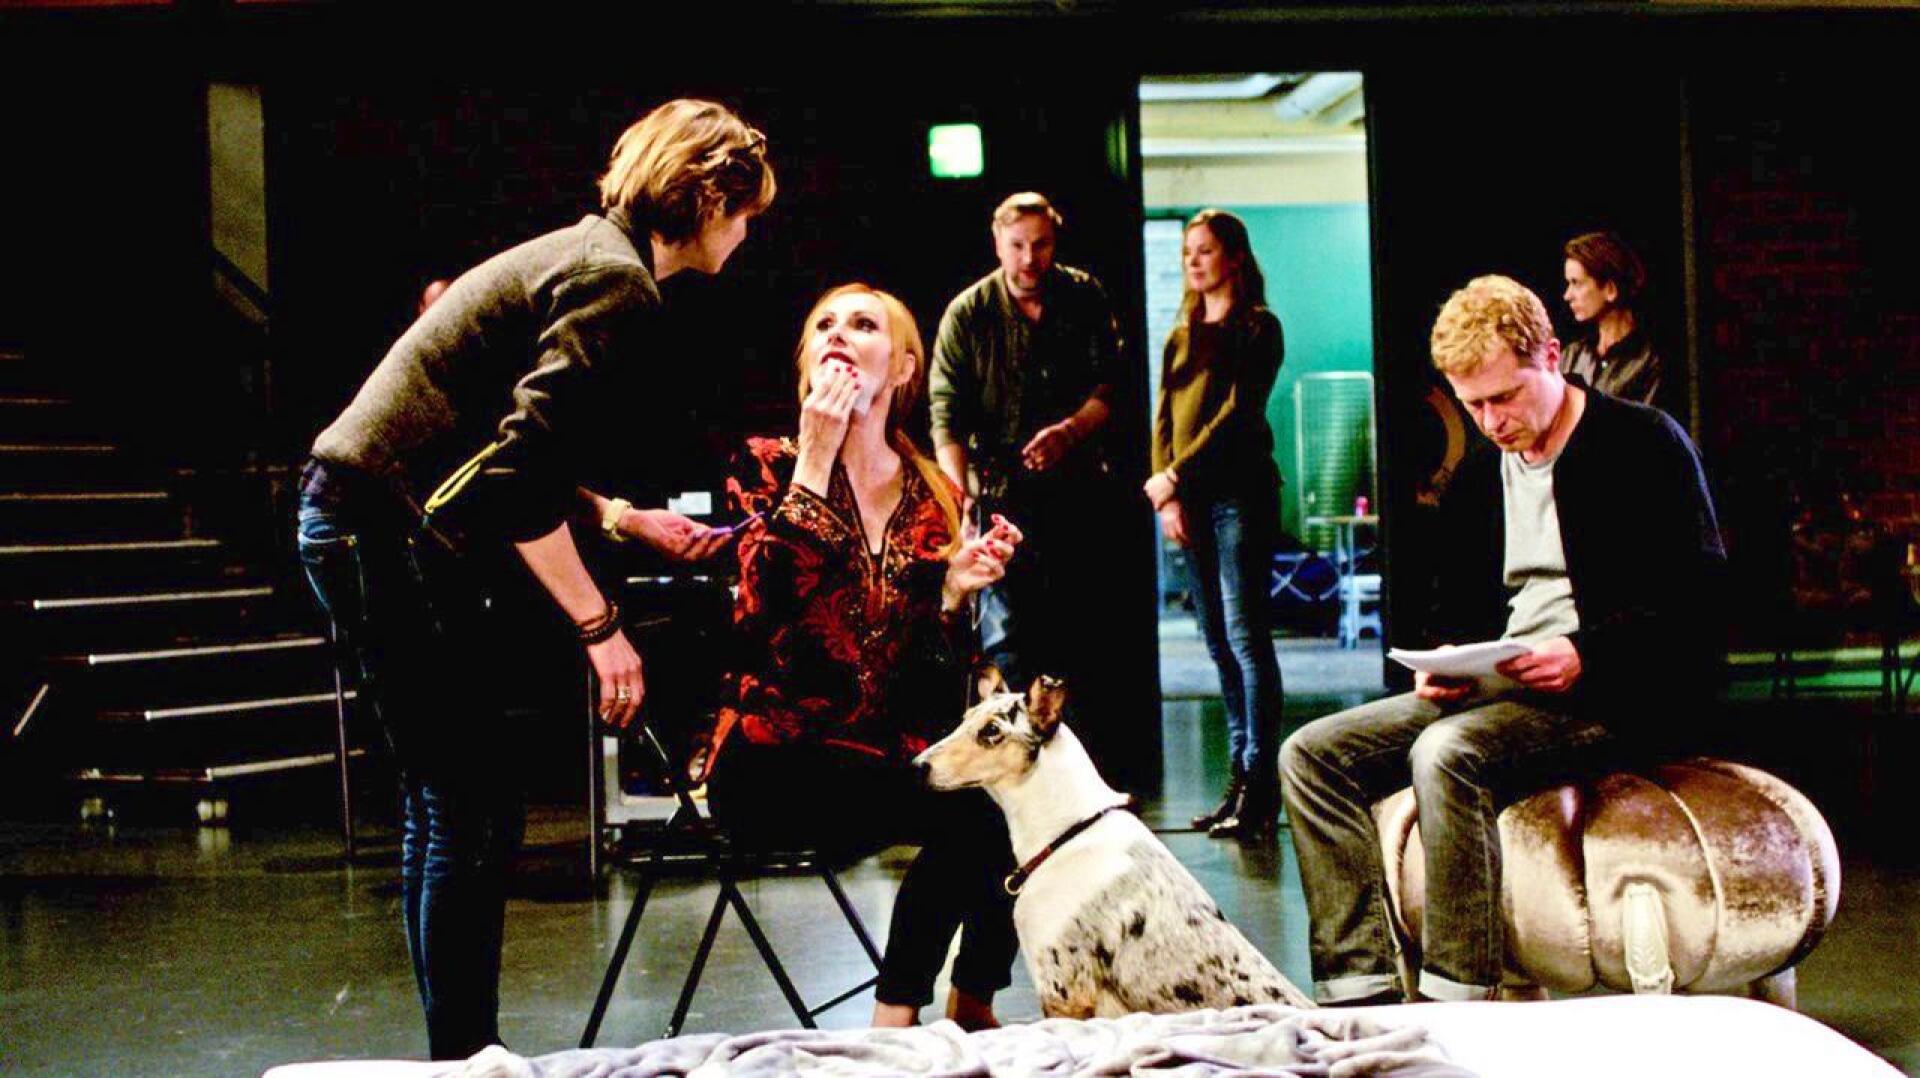 Teatteridiiva ja harjoituspari (Andrea Sawatzki ja Andreas Lust keskellä) sekoittavat näytelmän televisiosovituksen ohjaamisen. 